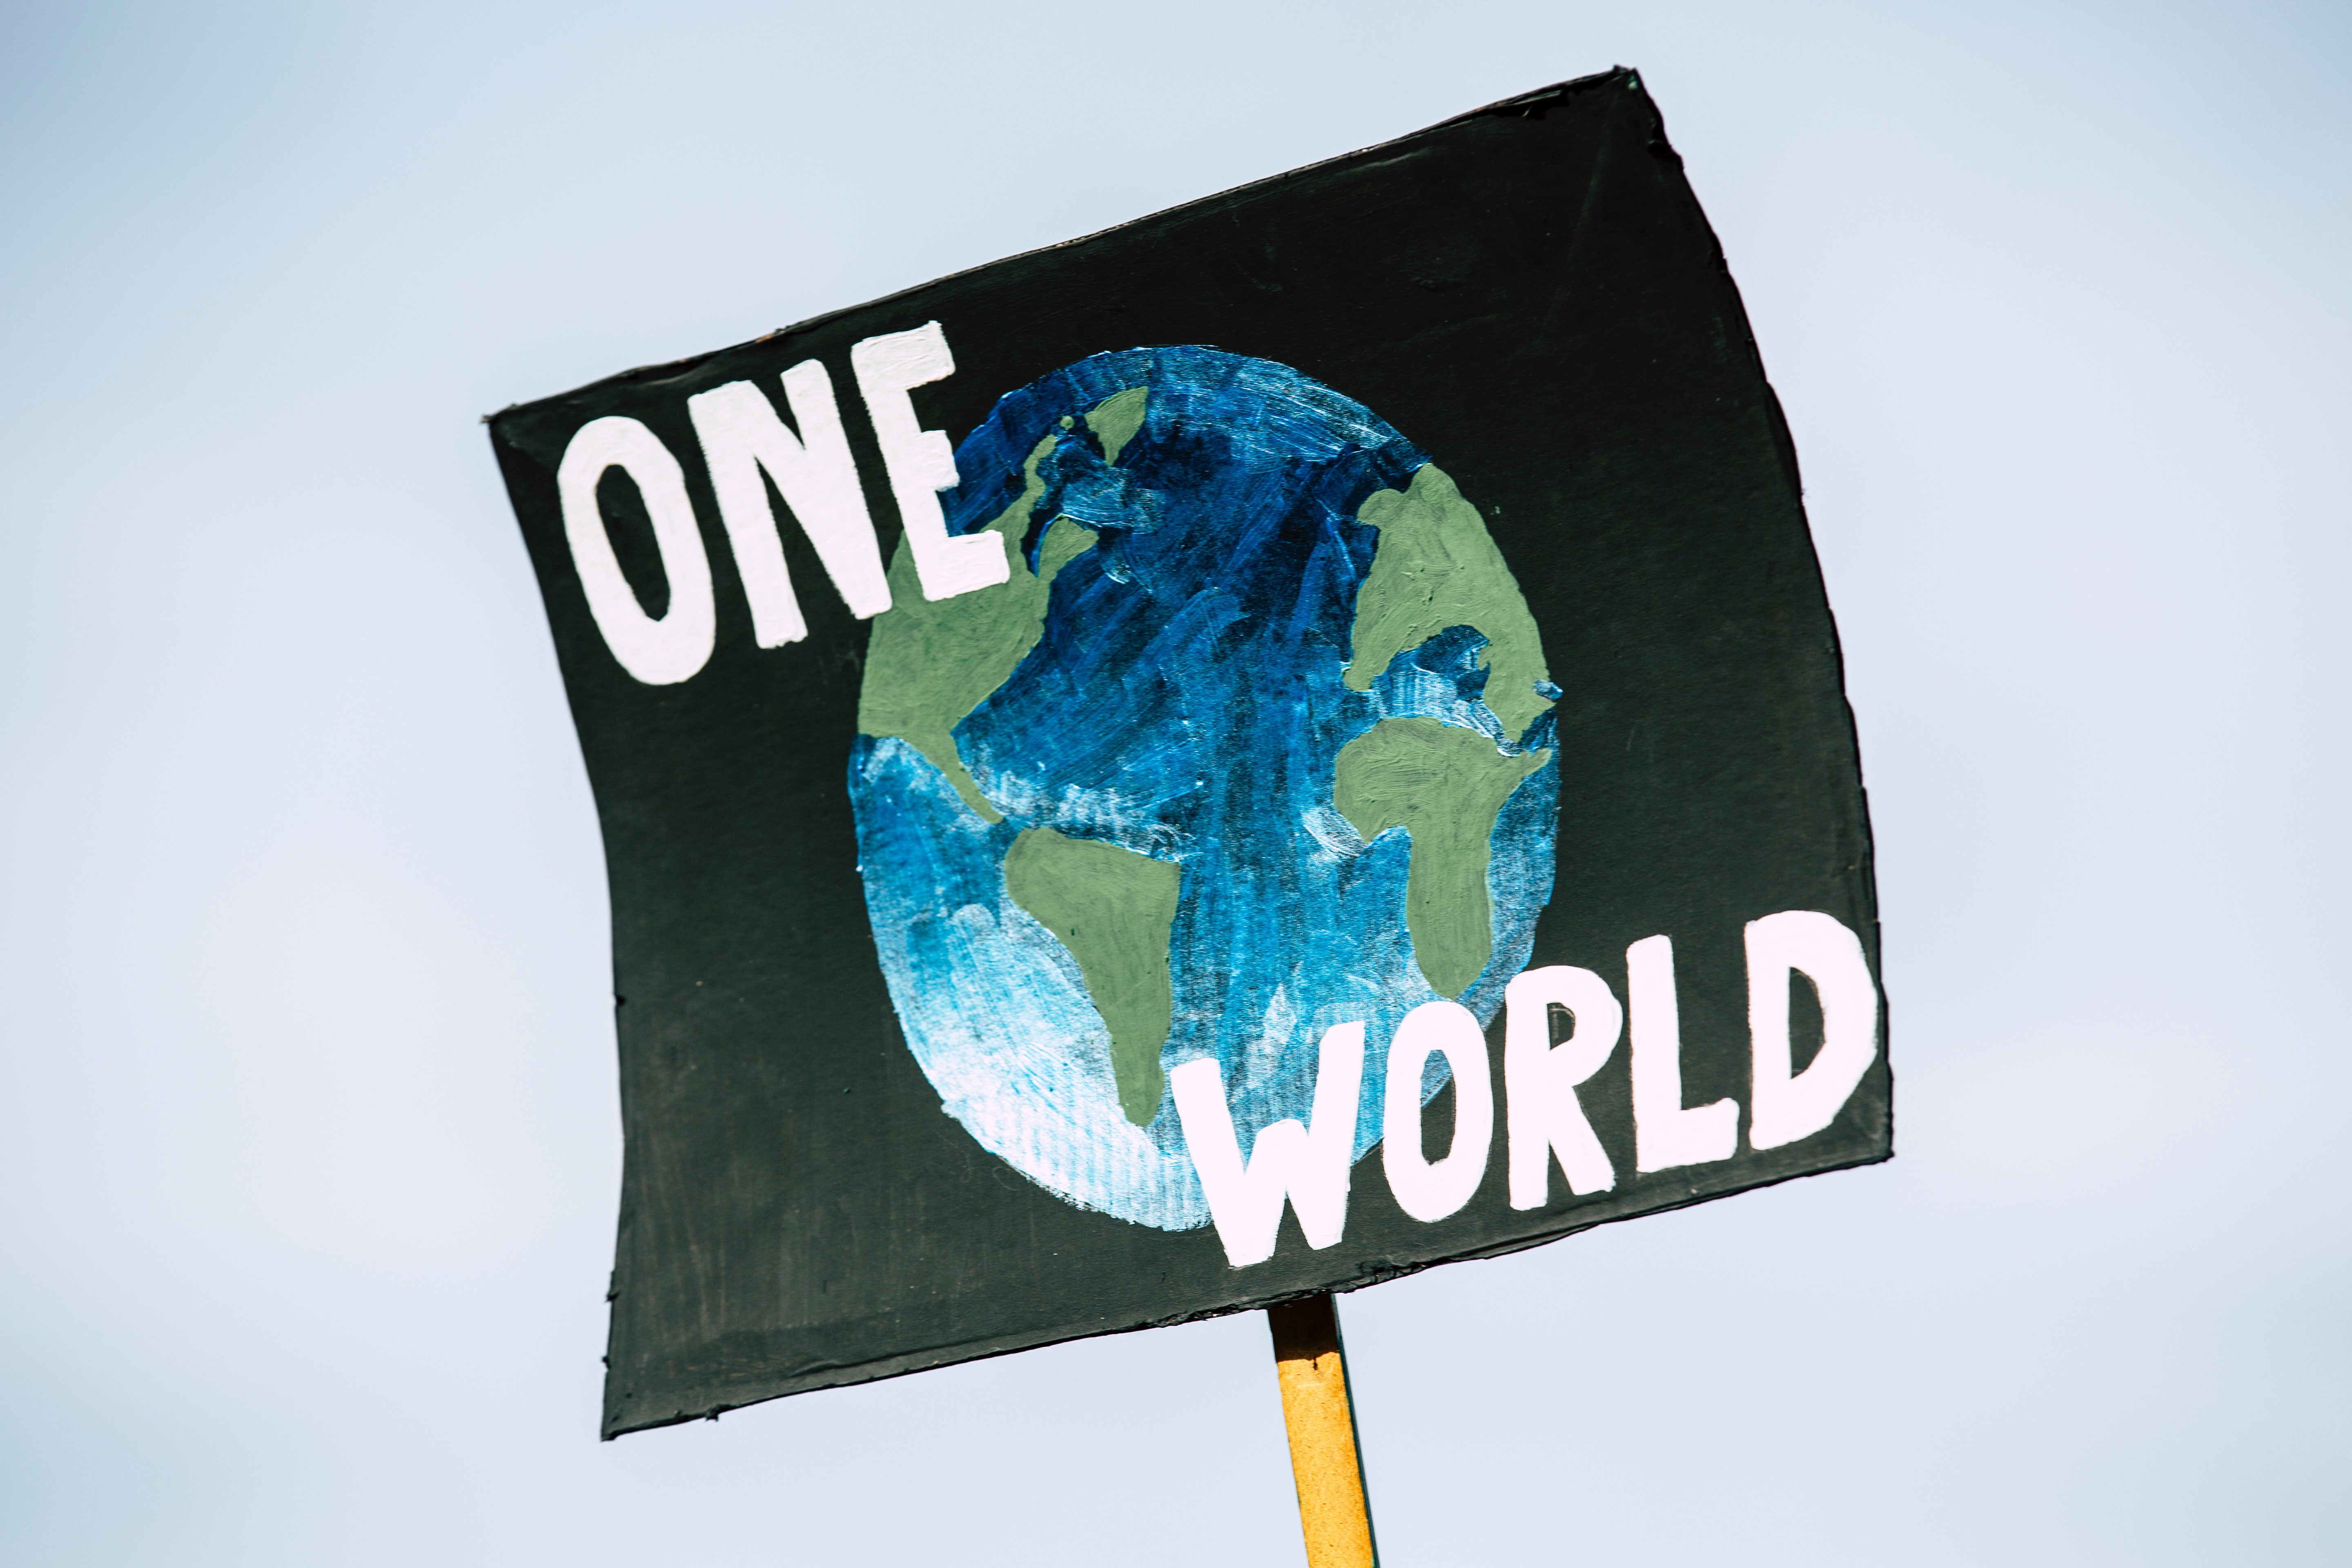 pancarte de manifestation indiquant "one world"